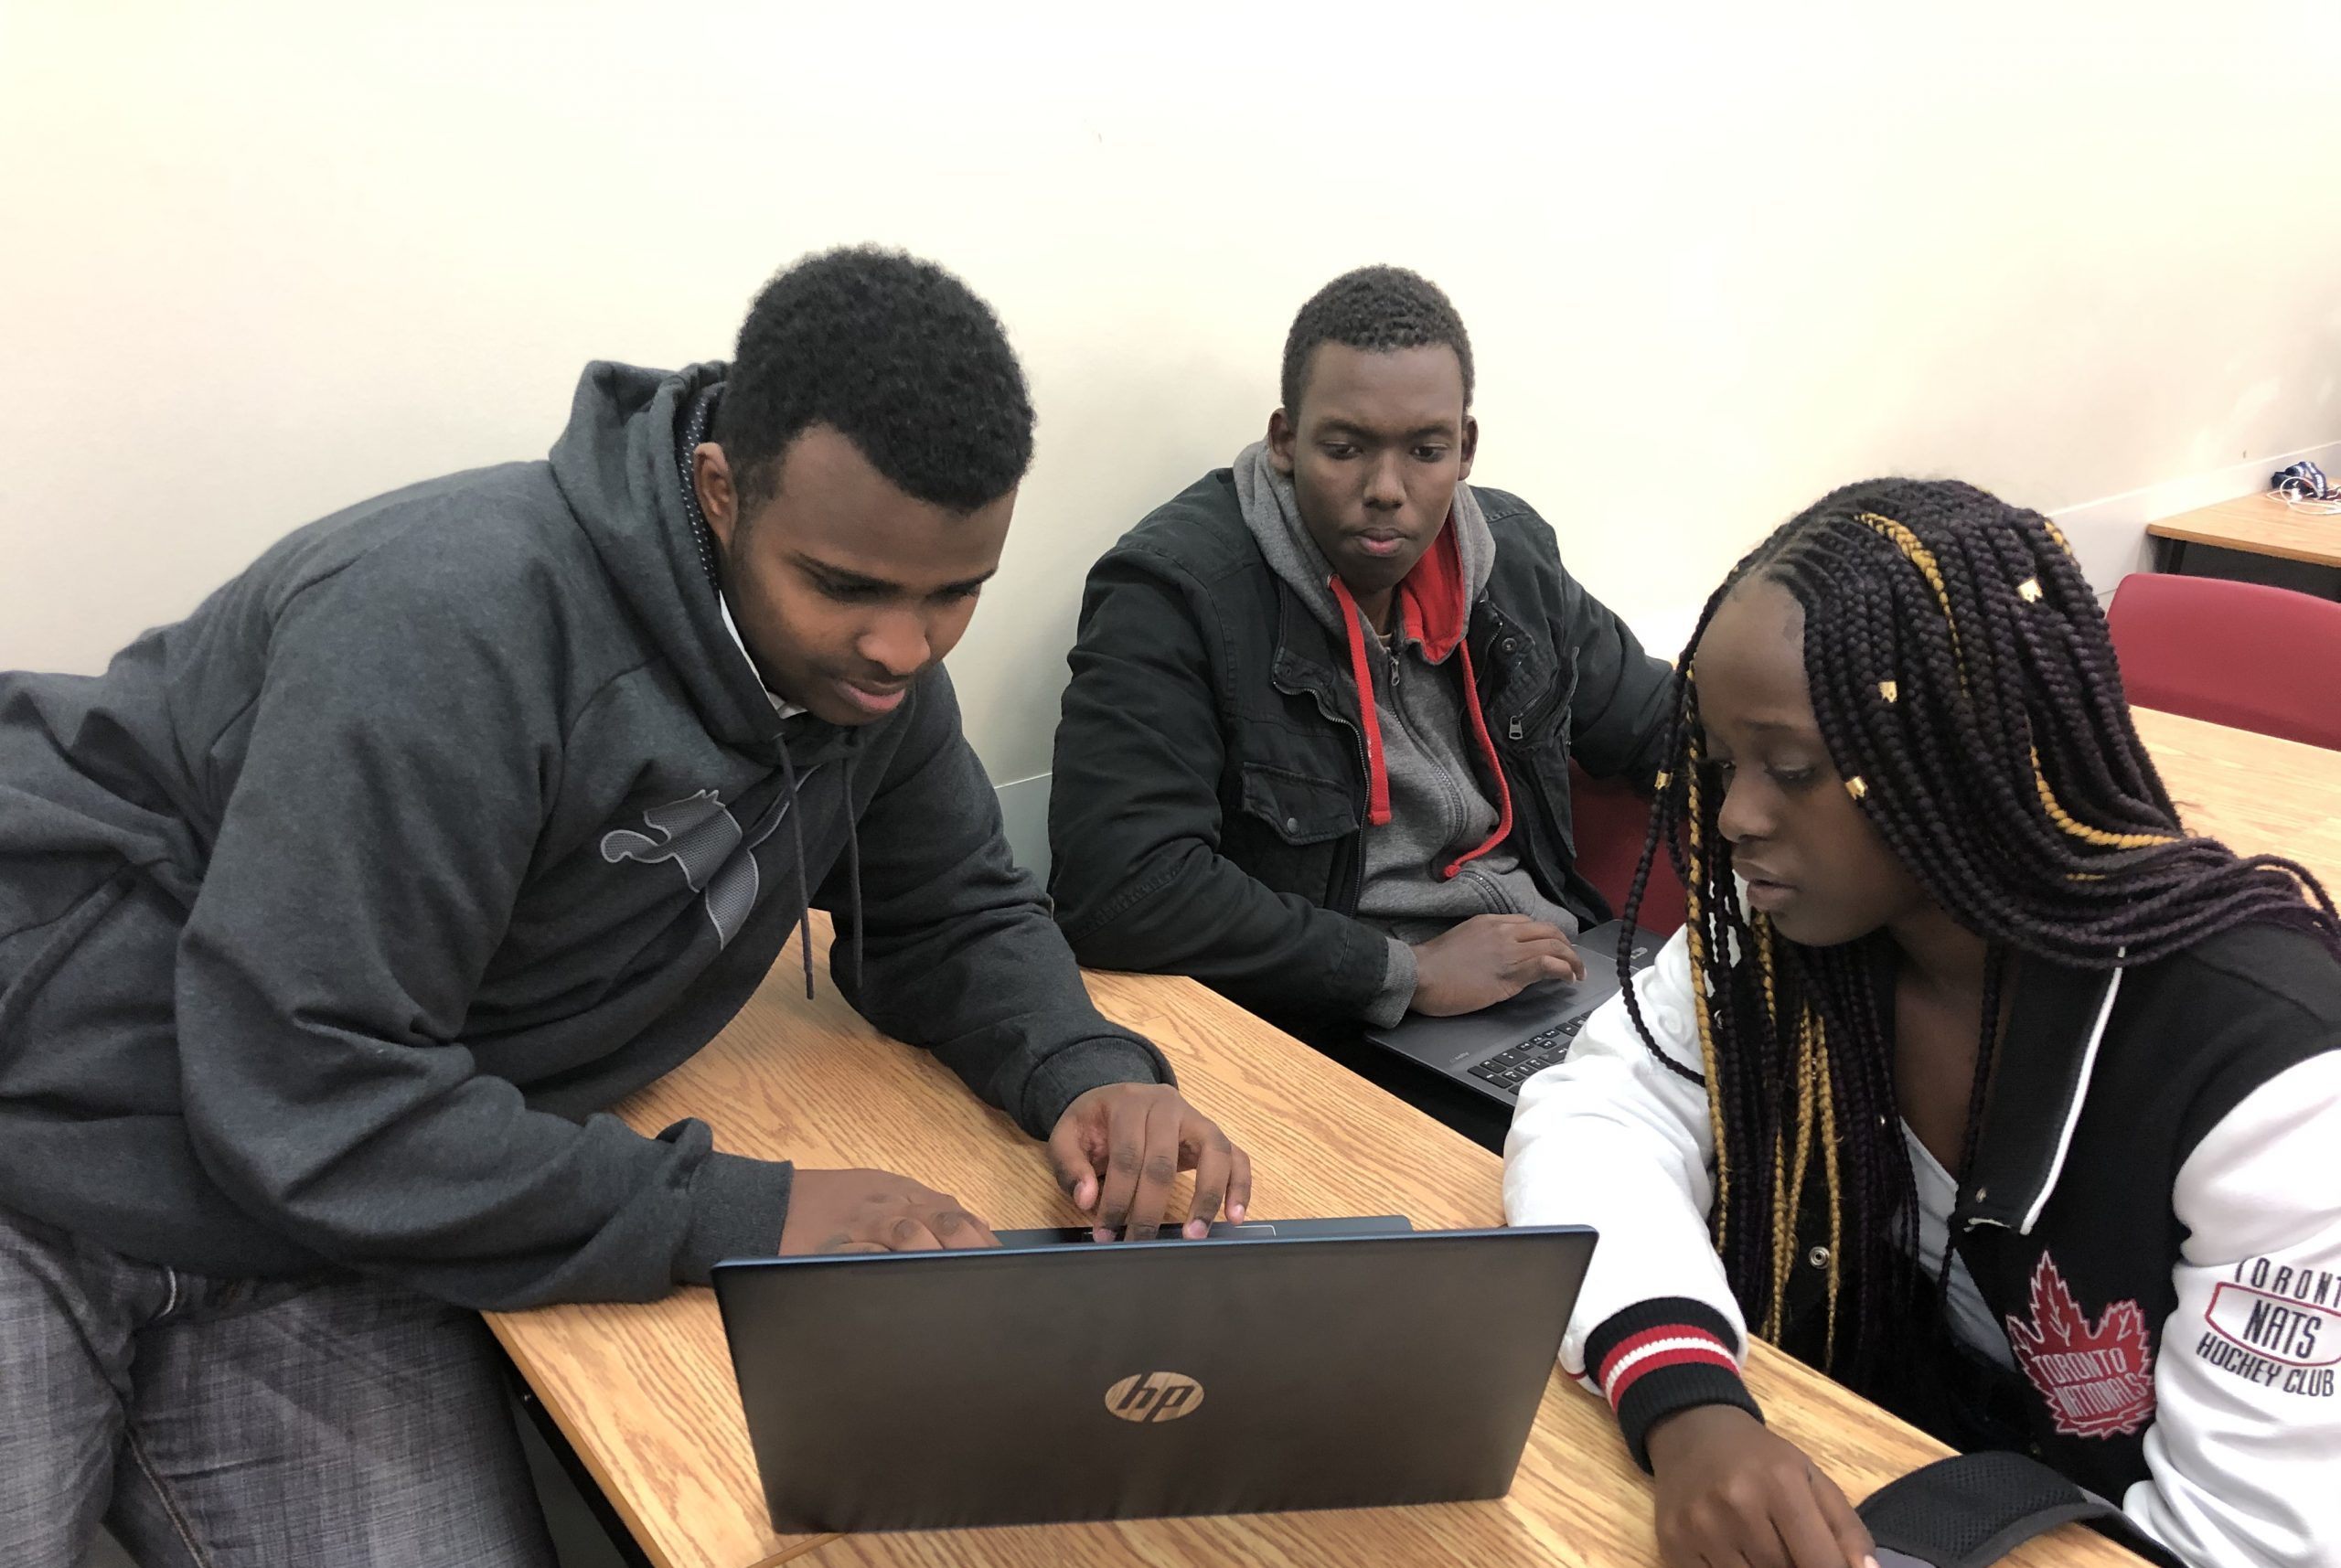  trois étudiants aux cheveux noirs regardent un ordinateur portable